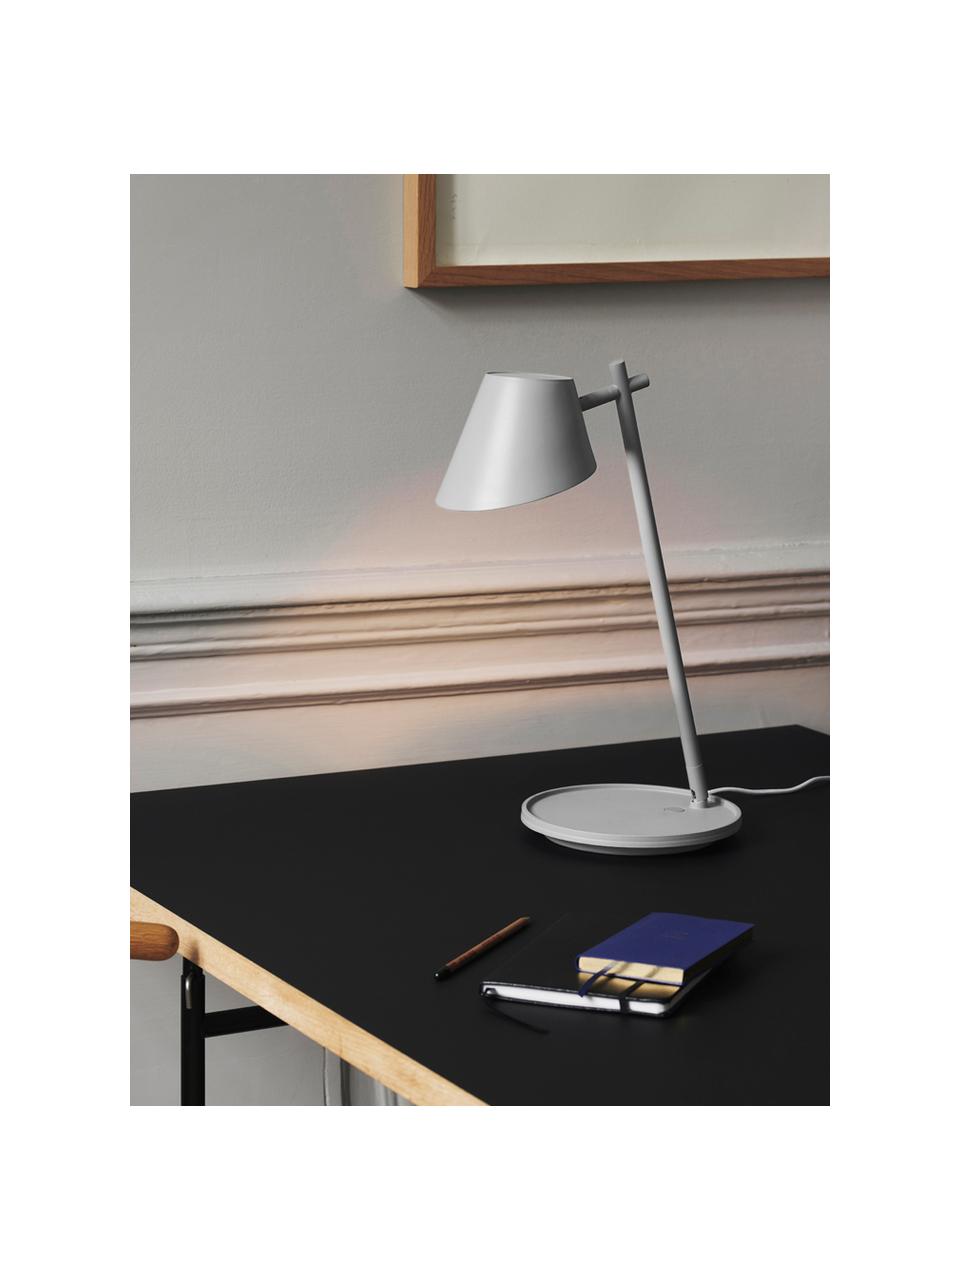 Dimbare LED bureaulamp Stay, Lampenkap: aluminium, Lampvoet: aluminium, kunststof, Grijs, Ø 20 x H 45 cm